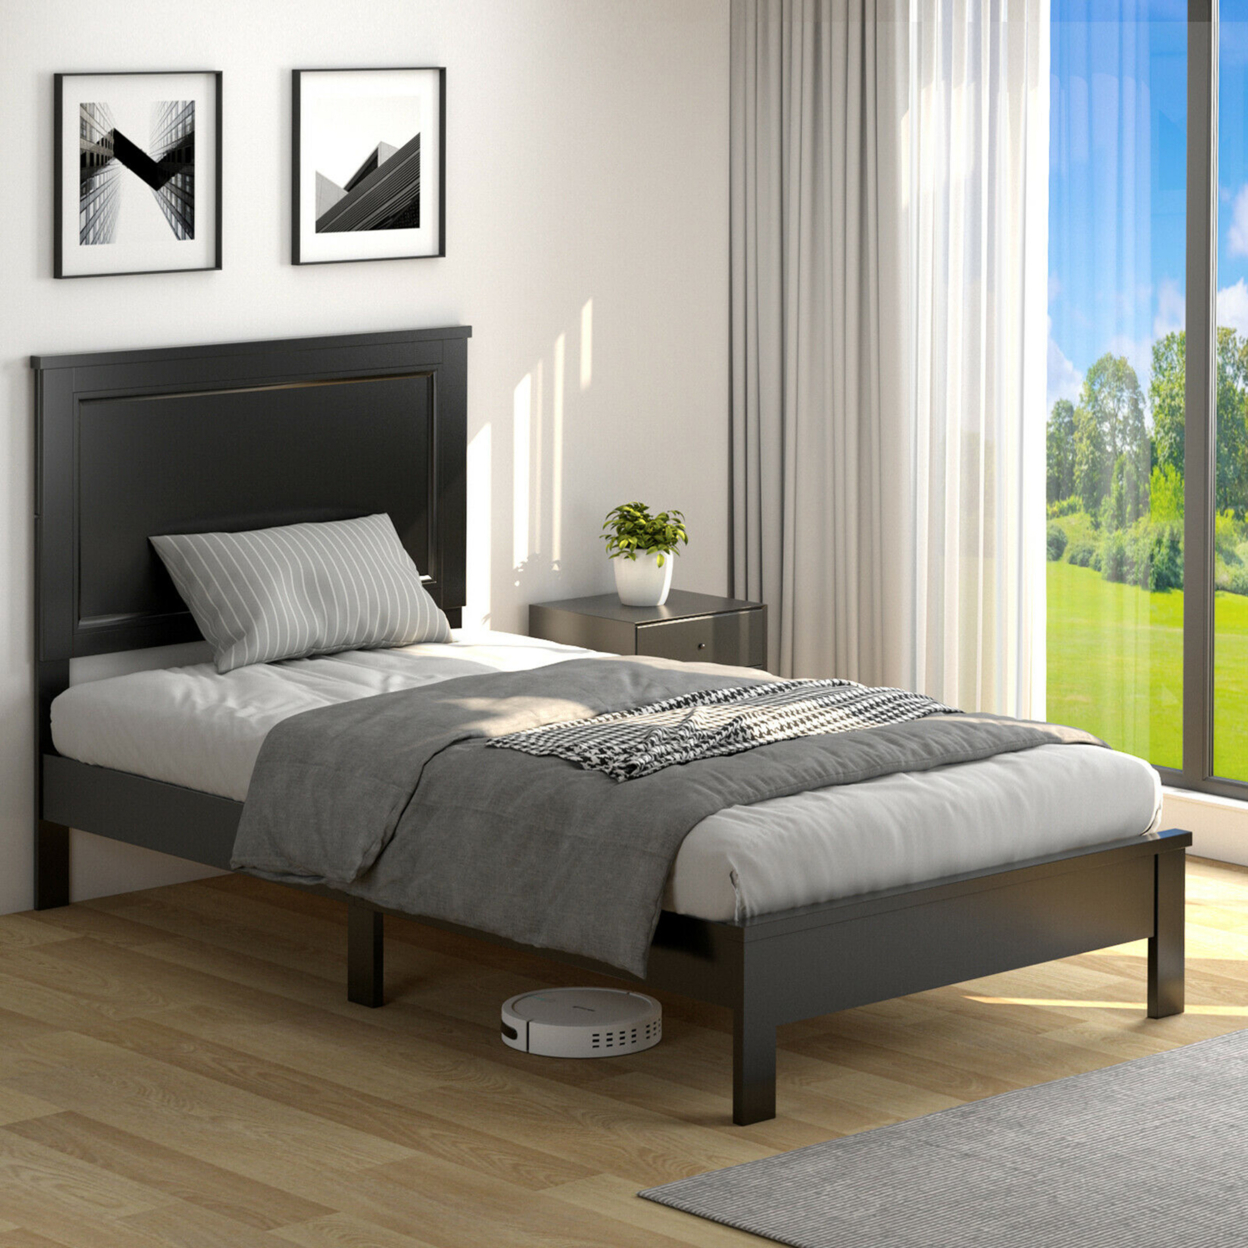 Twin/Full/Queen Size Bed Frame Platform Slat High Headboard Bedroom Rubber Wood Leg - Black, Twin